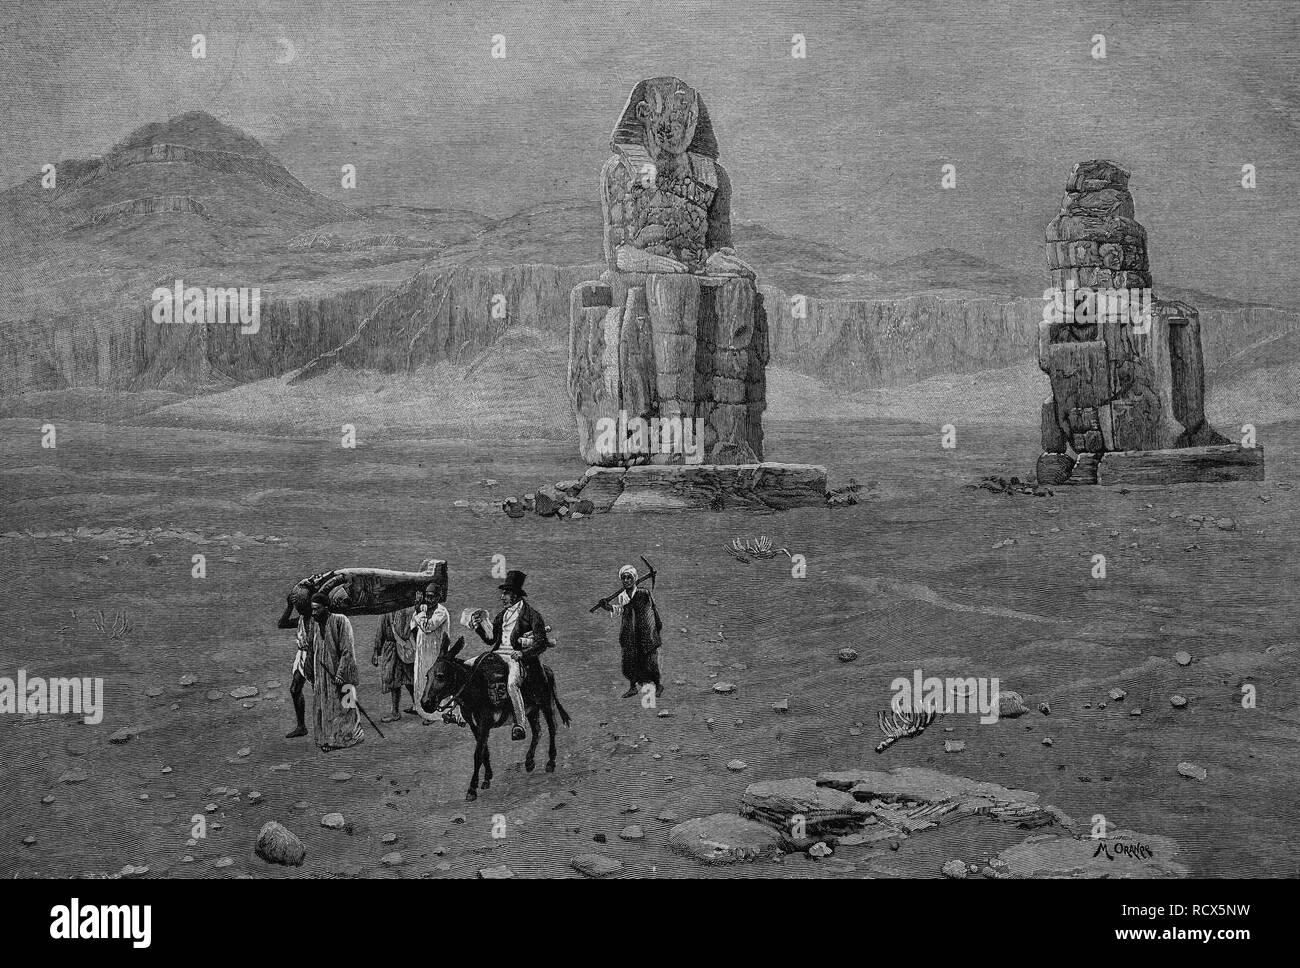 L'Archéologue Jean-François Champollion le Jeune, 1790-1832, à les colosses de Memnon en Egypte, gravure sur bois, 1888 Banque D'Images